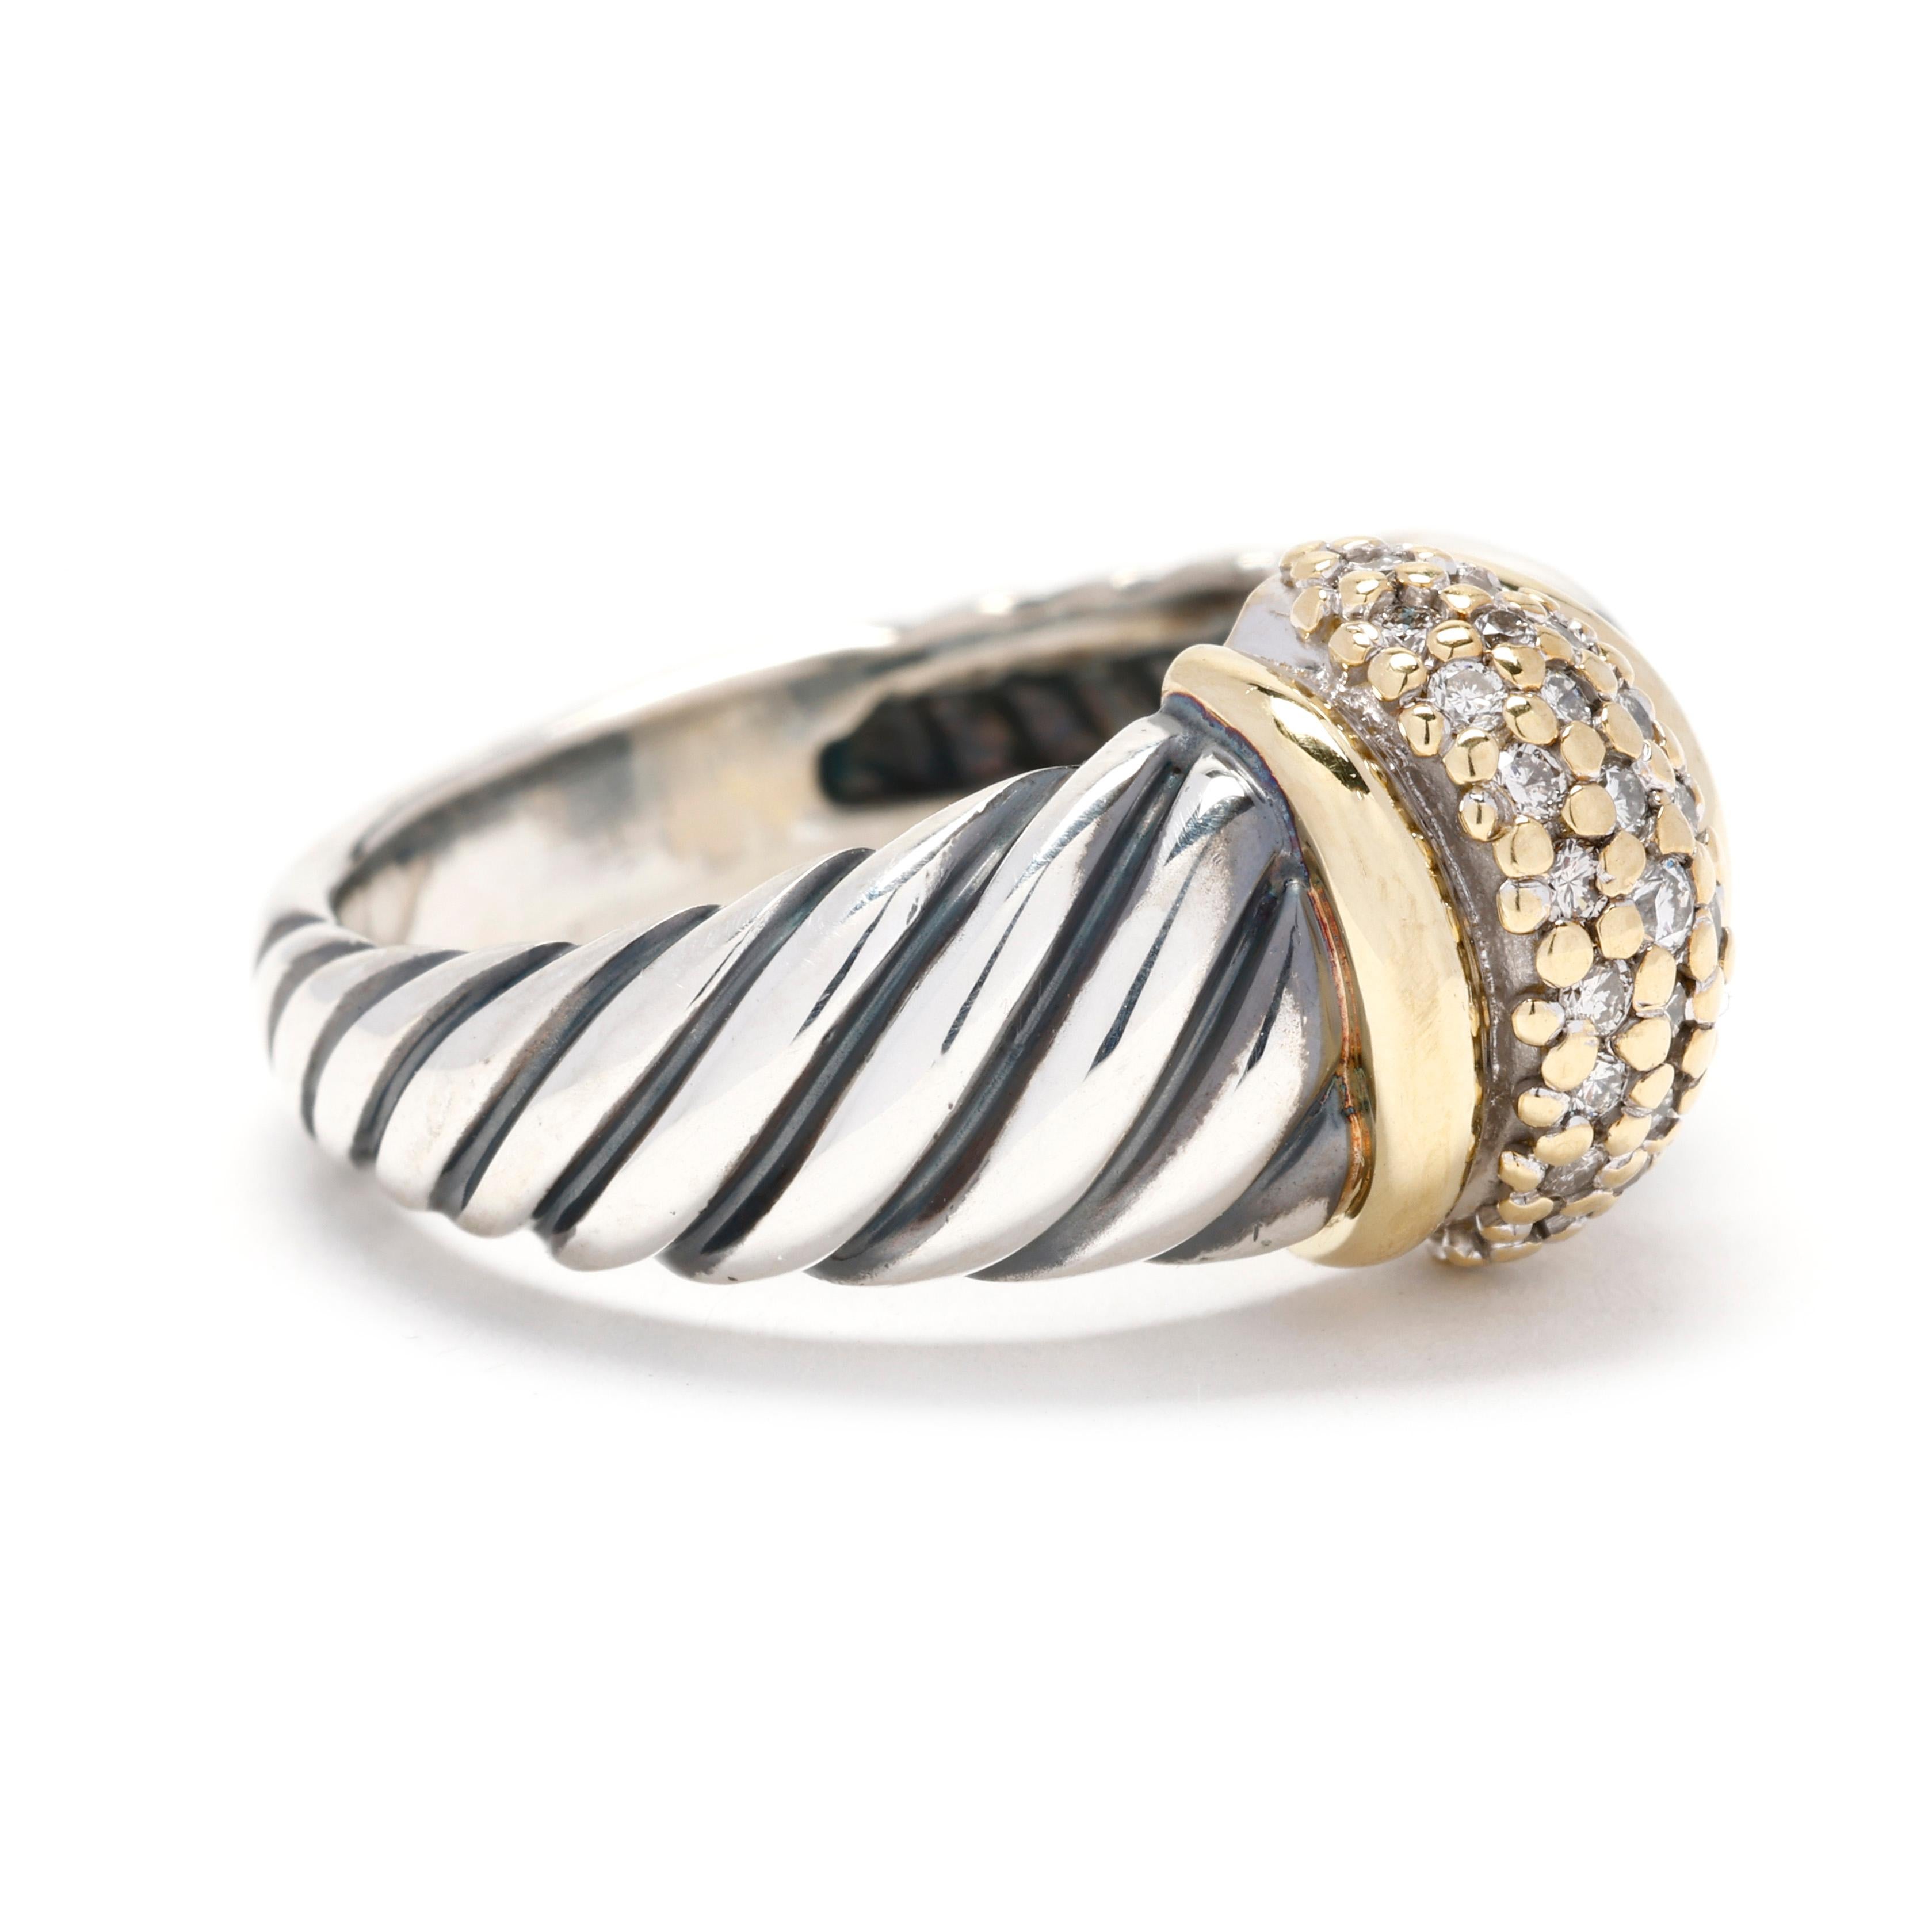 Erweitern Sie Ihre Schmucksammlung mit dem David Yurman Classic Cable Diamond Band Ring, einer harmonischen Mischung aus Luxus und zeitlosem Design. Dieses exquisite Stück zeigt das ikonische Kabelmotiv, ein Markenzeichen von David Yurman, gefertigt